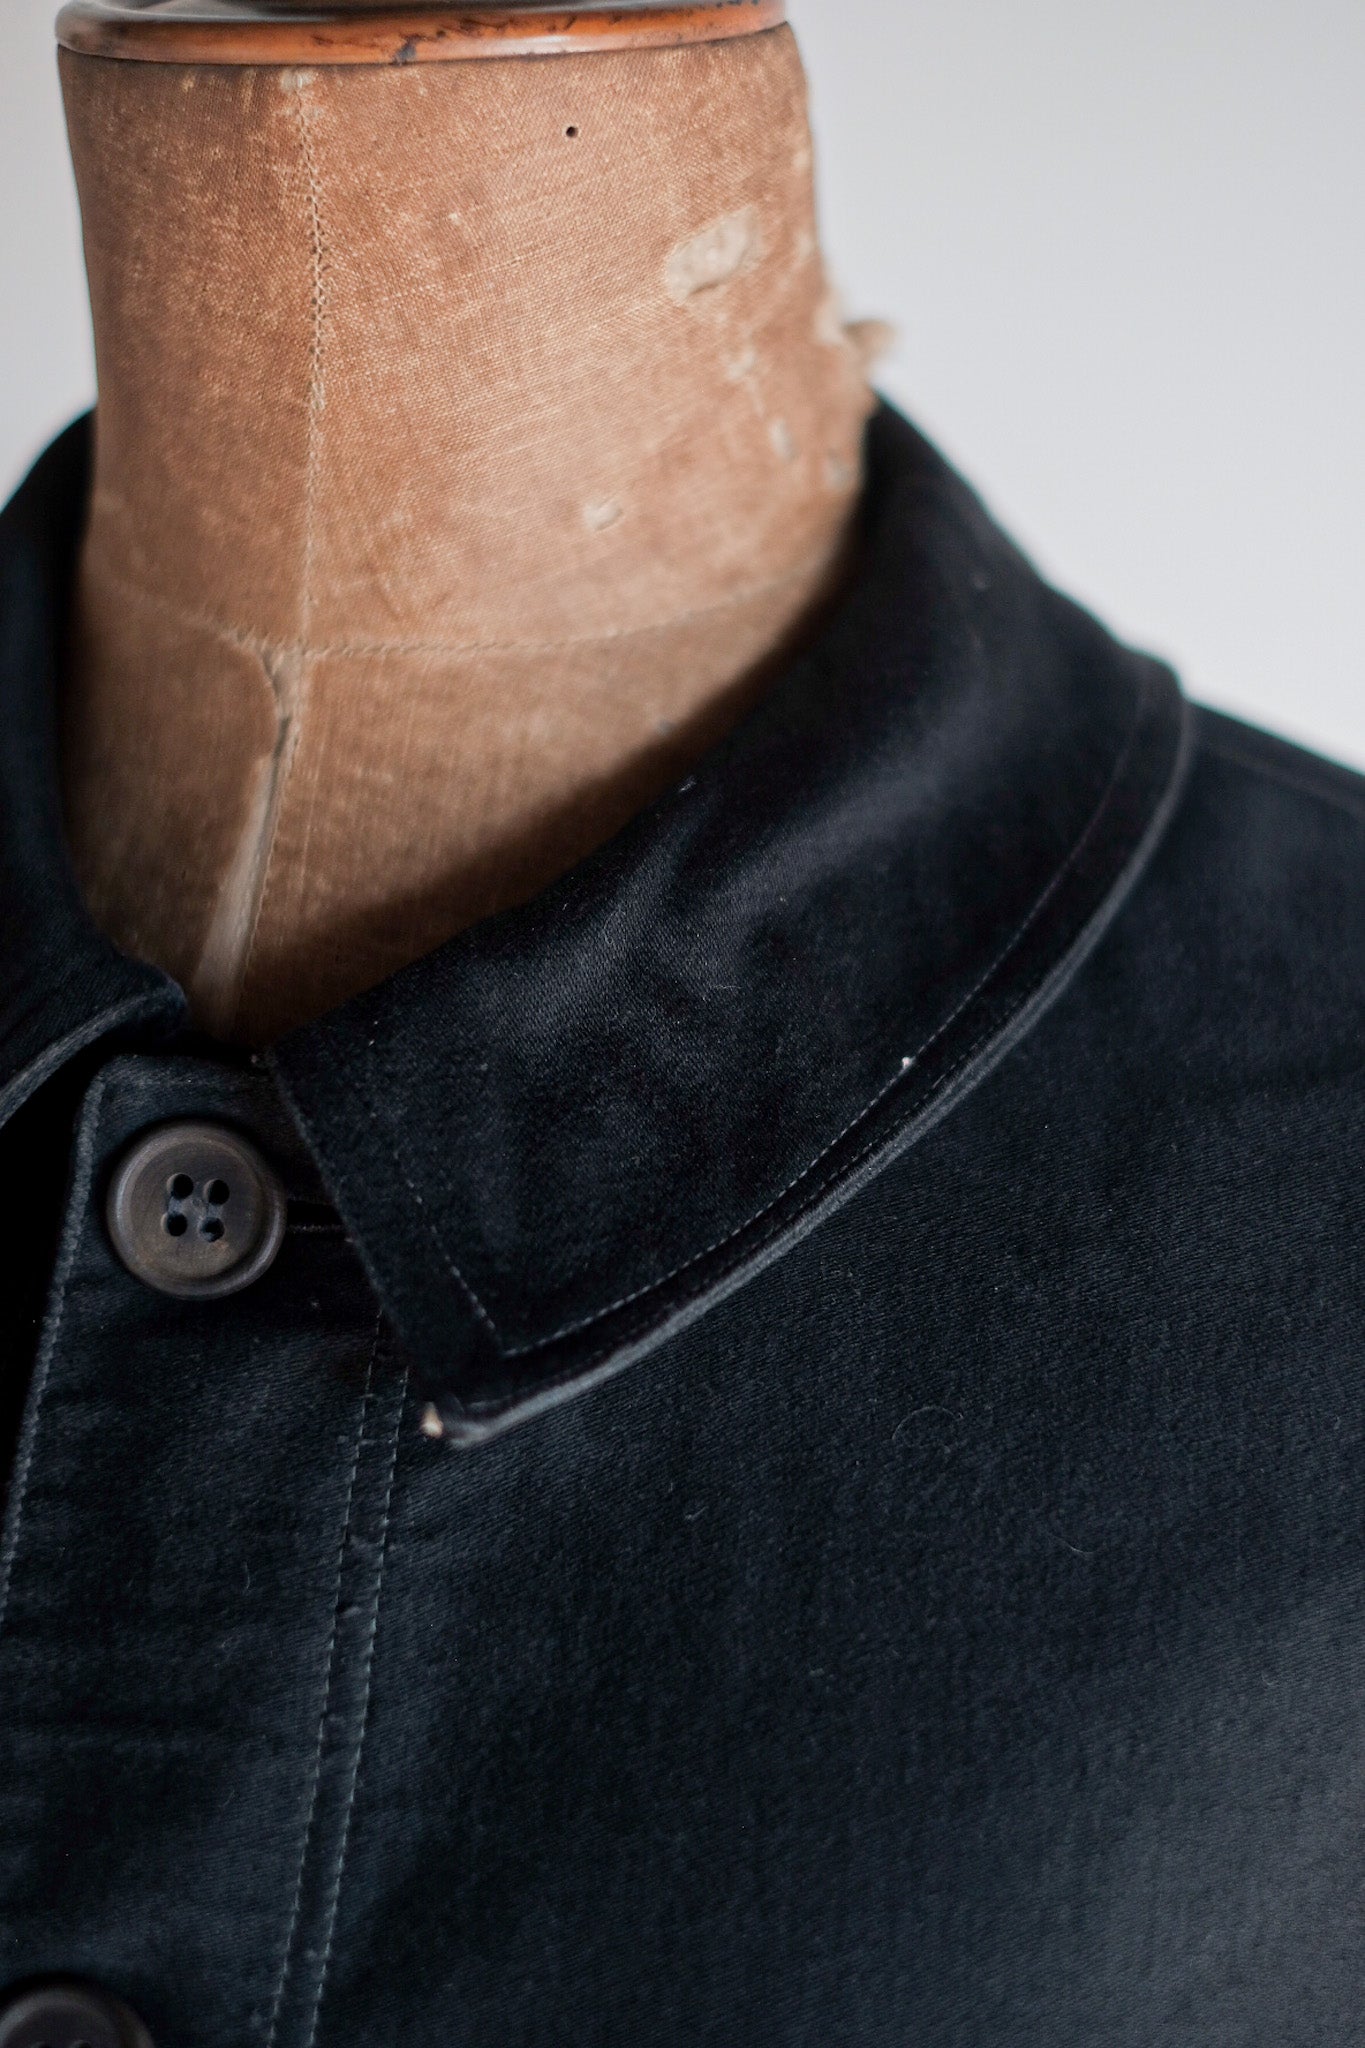 [〜30年代]法國復古黑色摩爾金工作夾克